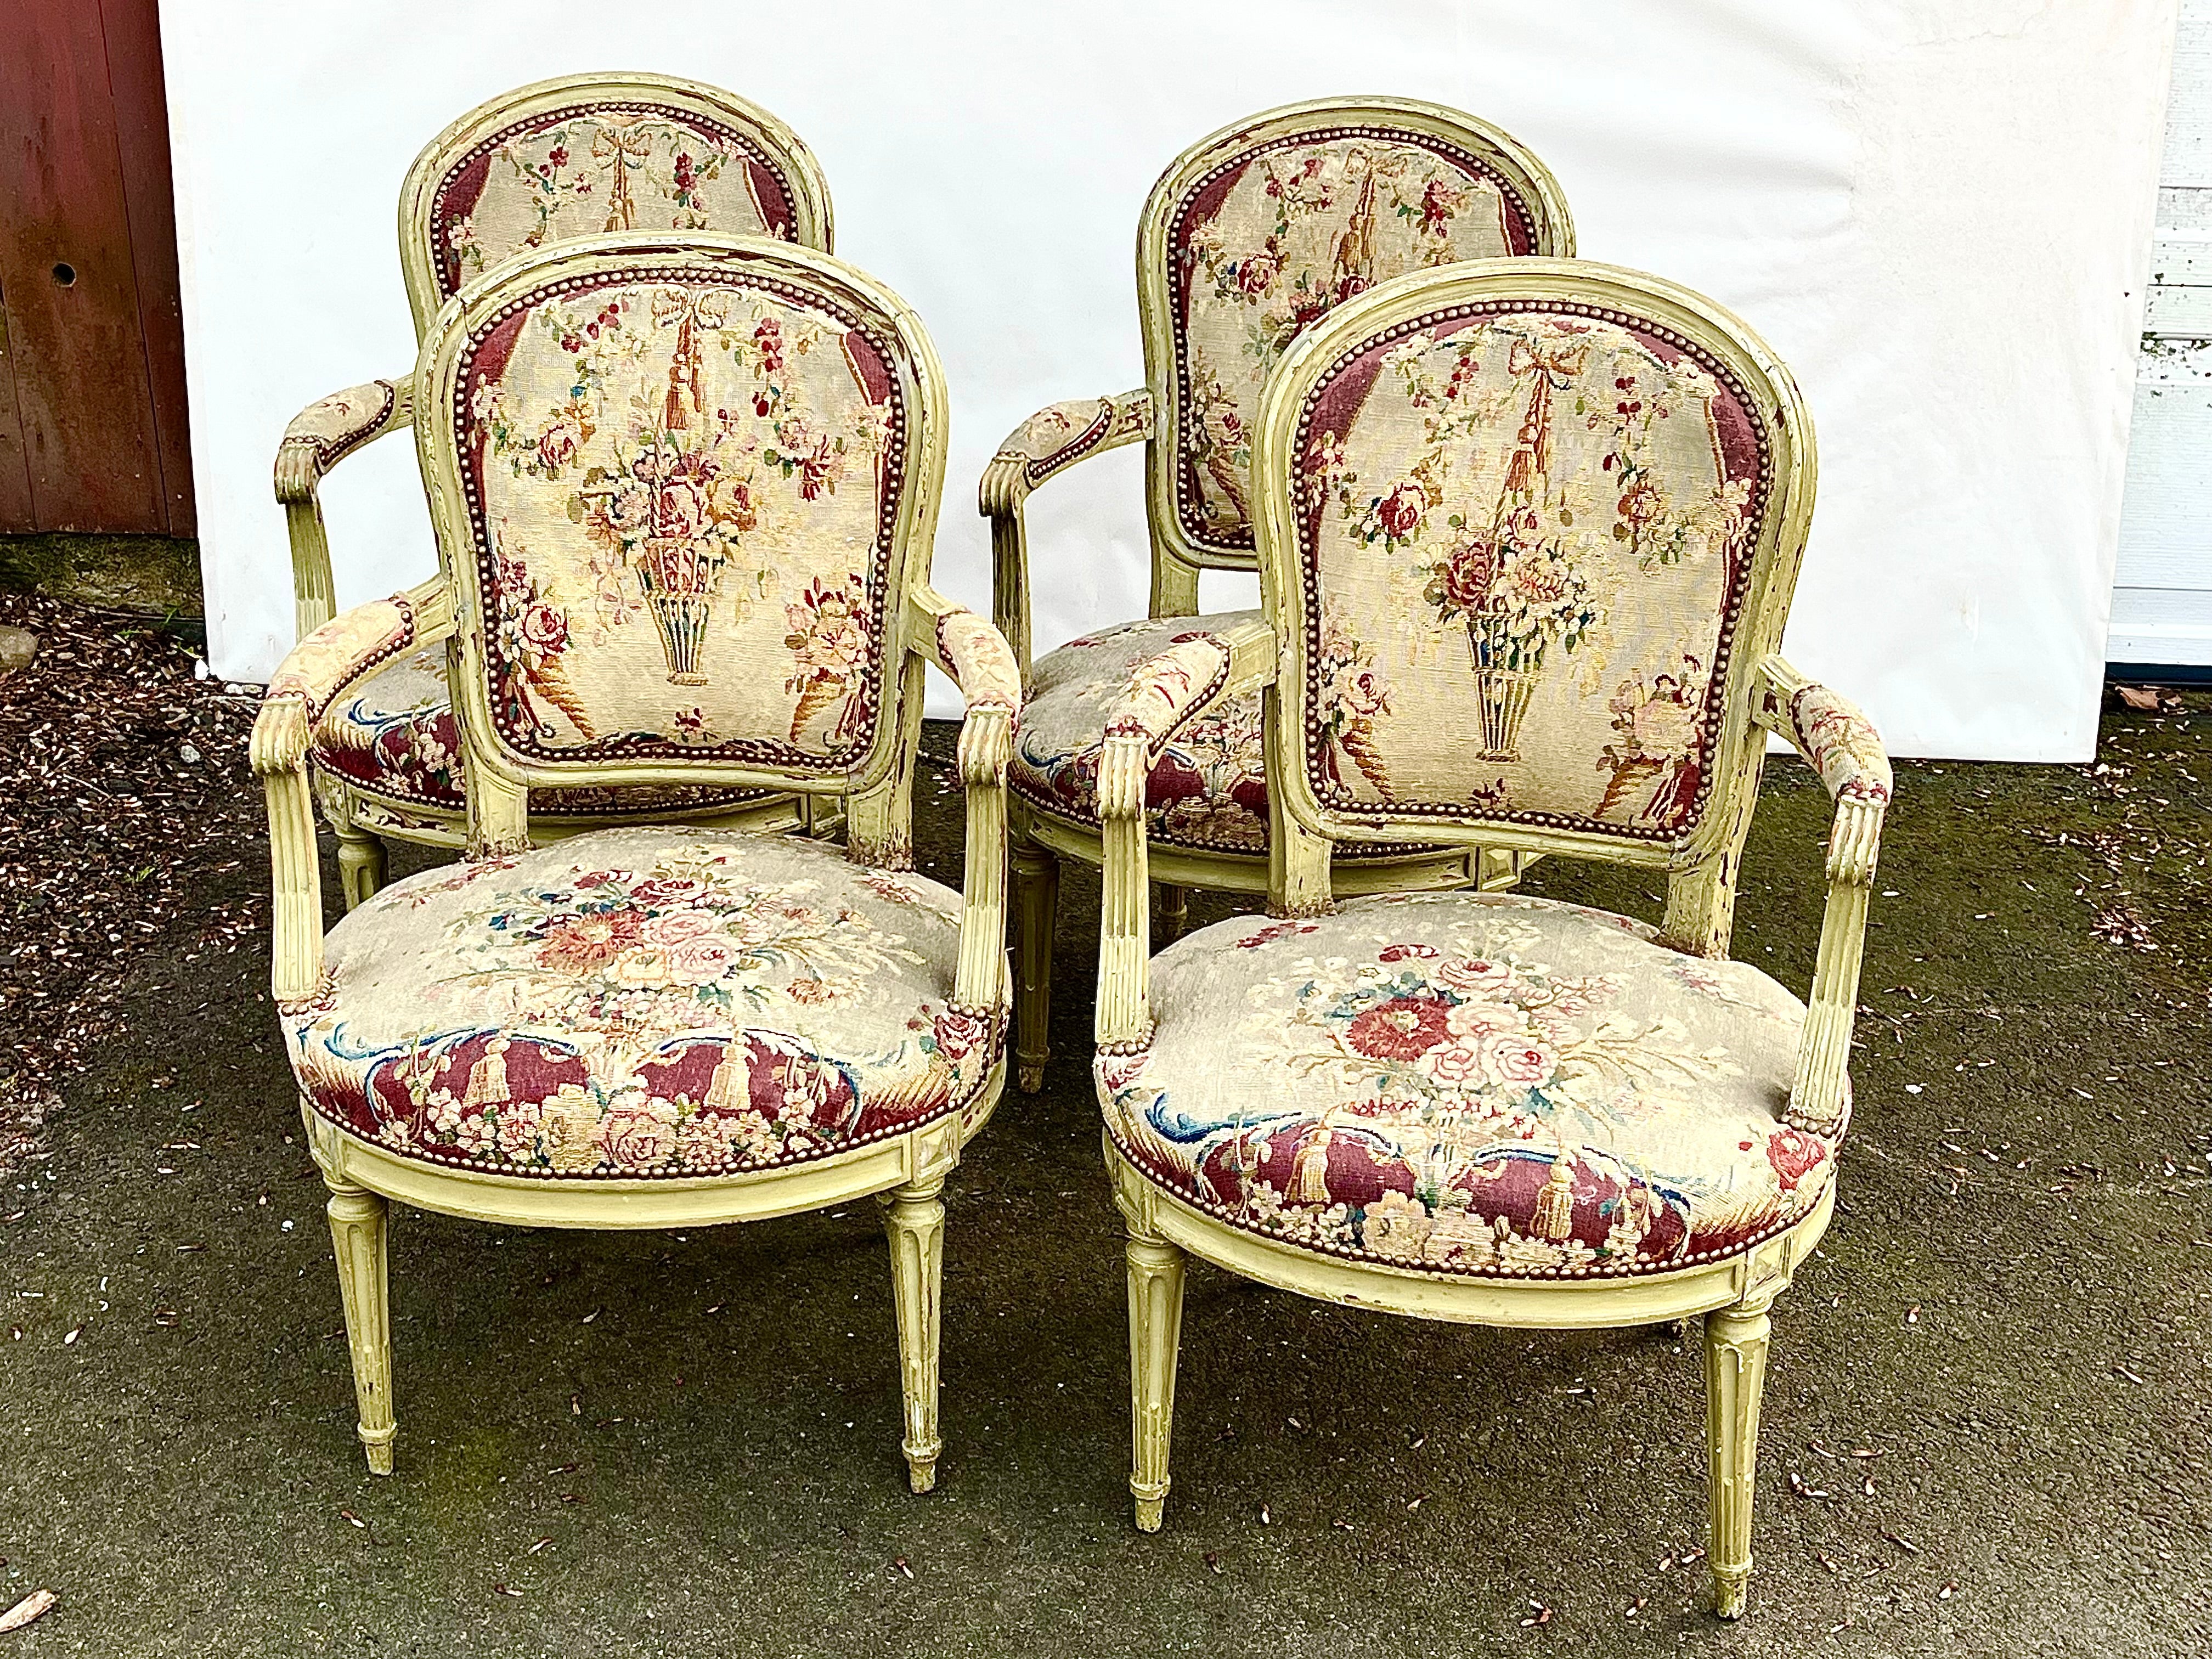 Ein Satz von 4 Fauteuils aus der Louis XVI-Periode in originaler grüner Lackierung, mit Sitzen und Rückenlehnen aus Gobelin aus dem 18. Jahrhundert, jeder Stuhl vom Hersteller auf der Sitztrage signiert "F. LAPIERRE A LYON".

Kann paarweise für die